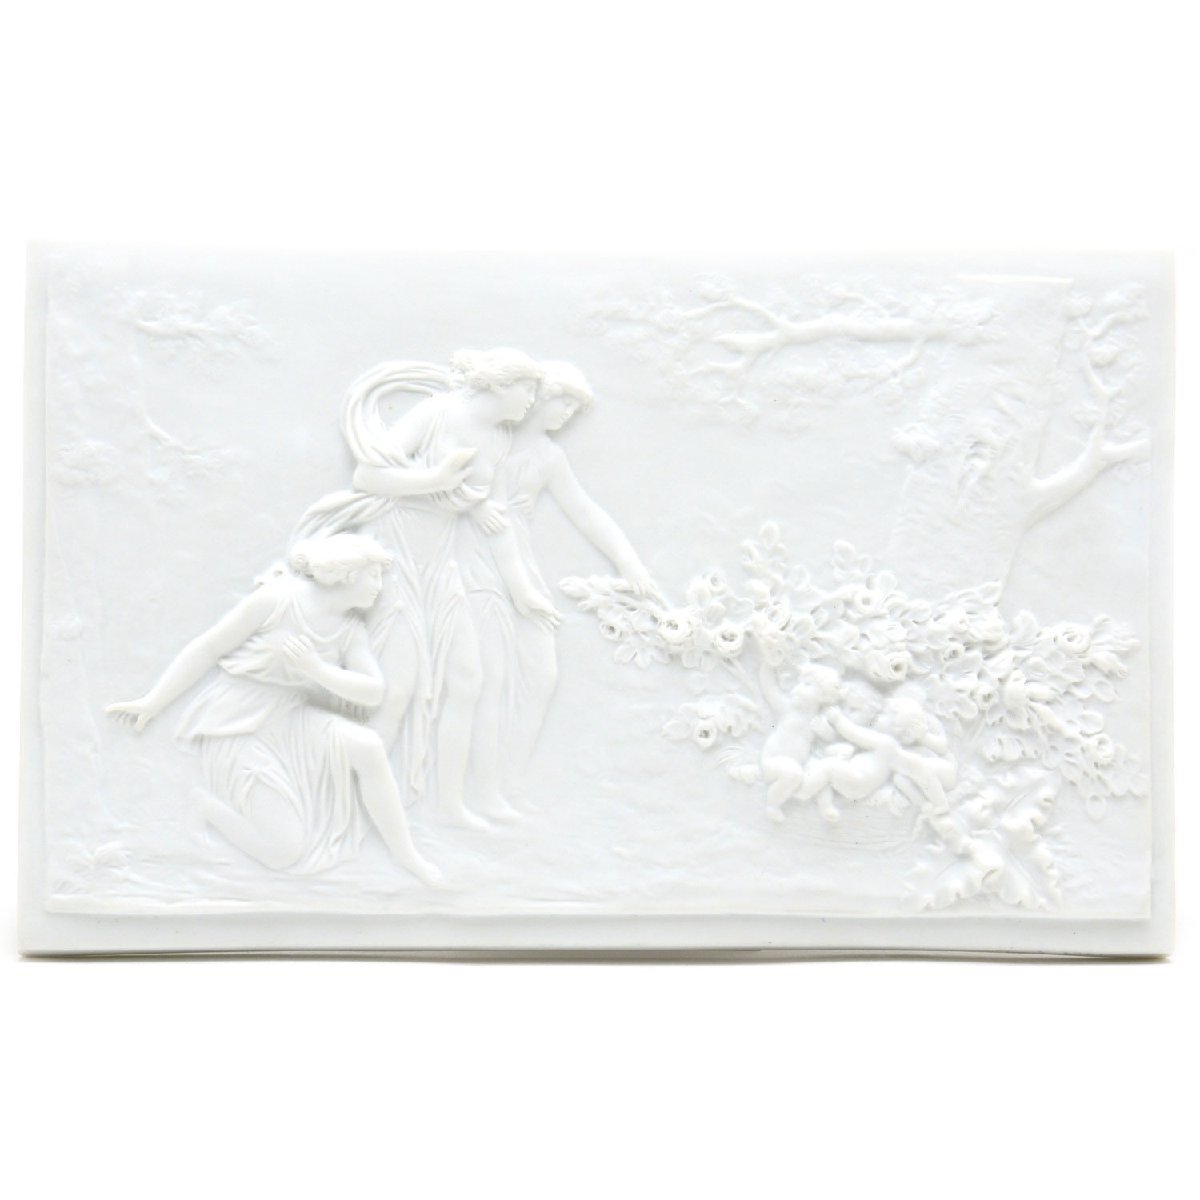 セーブル(Sevres) 壁飾り 愛の巣 白磁 ビスケット 女性と天使達 浅浮き彫りプラーク 2003年復刻 フランス製 新品